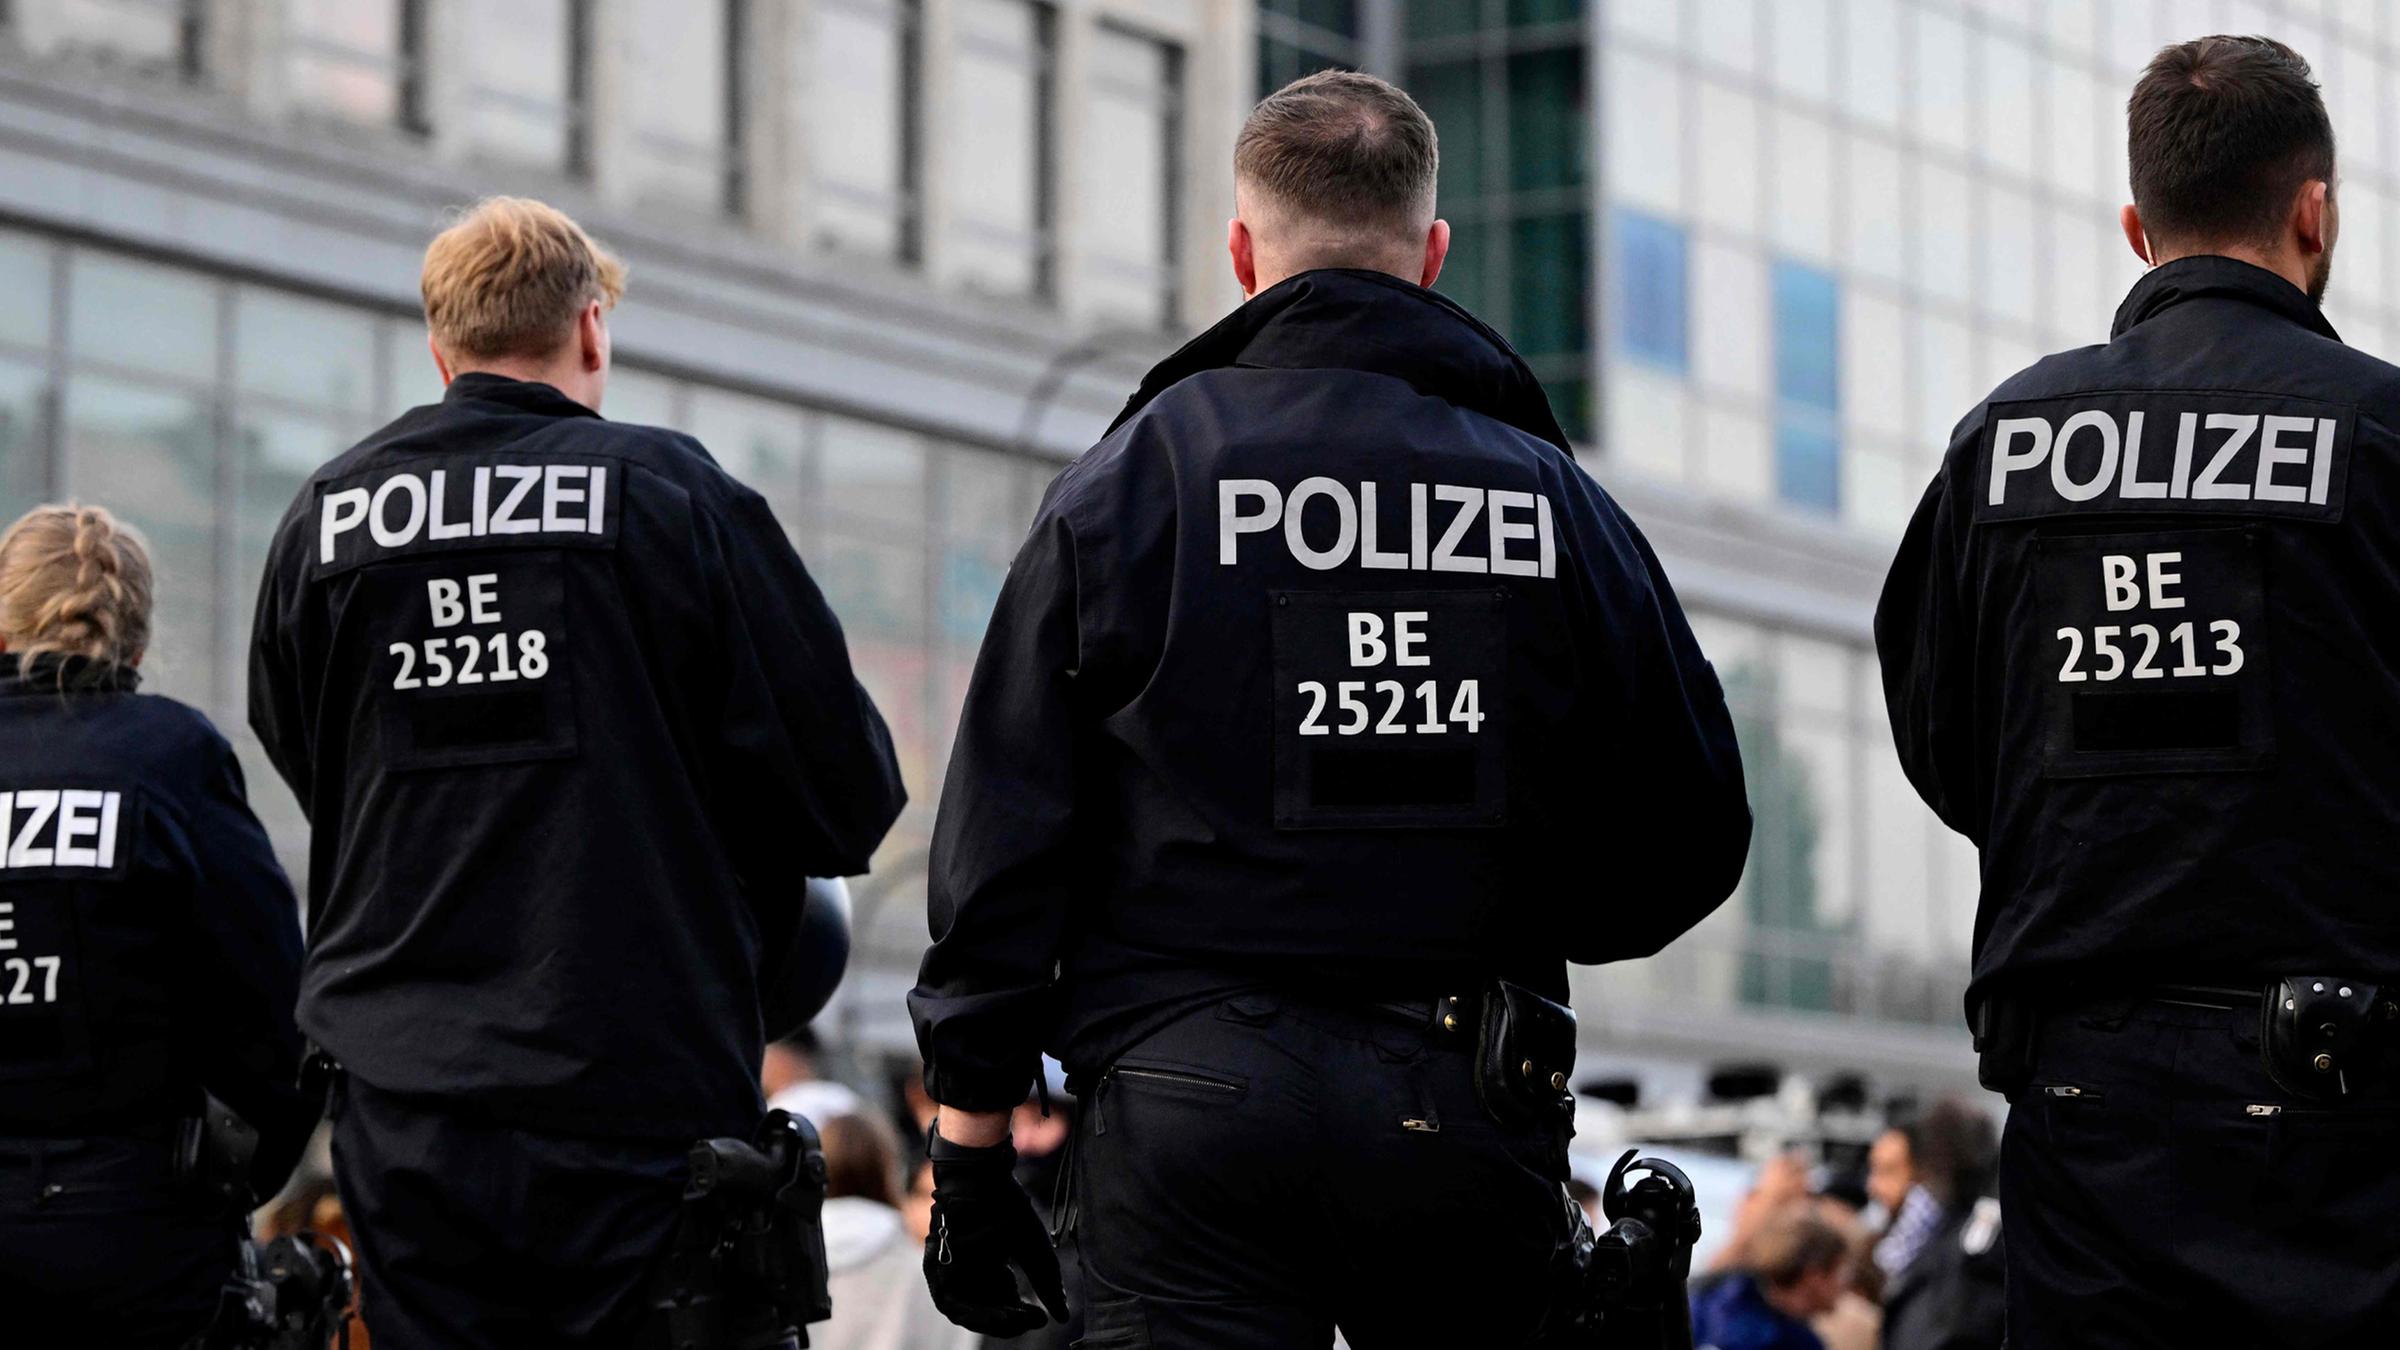 Polizei: Bodenoffensive wird Auswirkungen auf Berlin haben